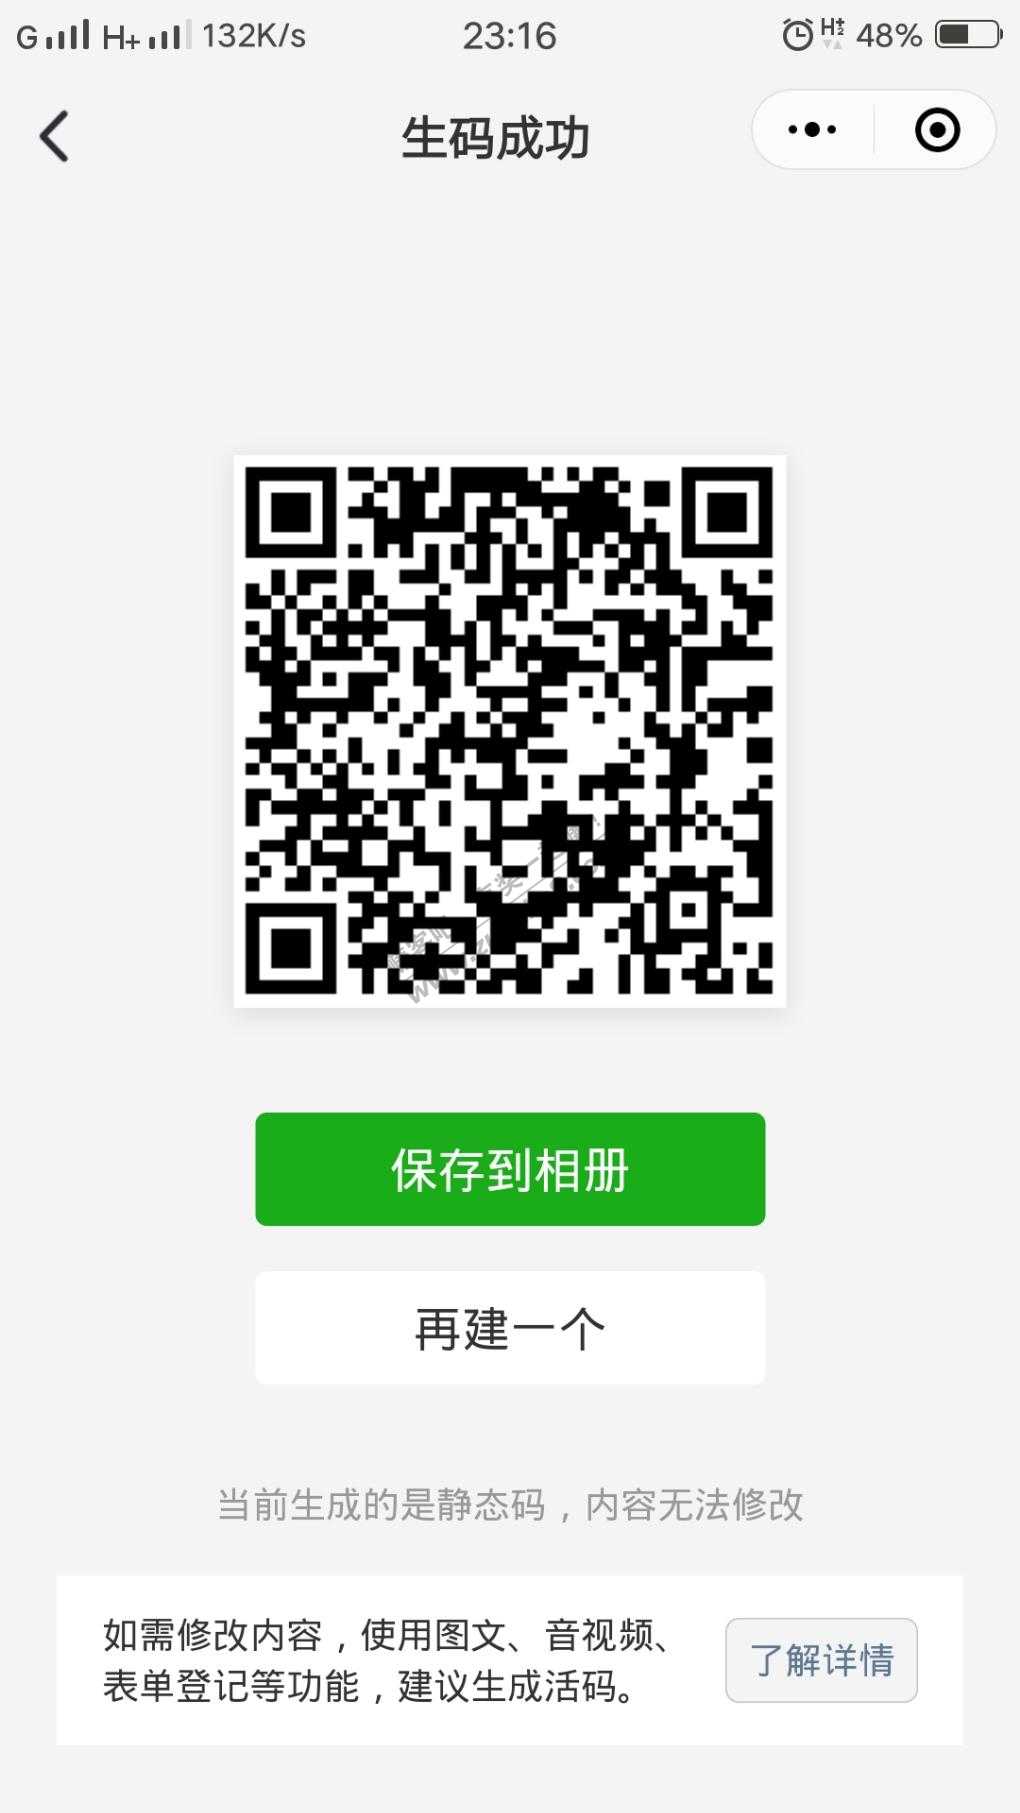 腾讯理财通 理财送红包10.88-惠小助(52huixz.com)